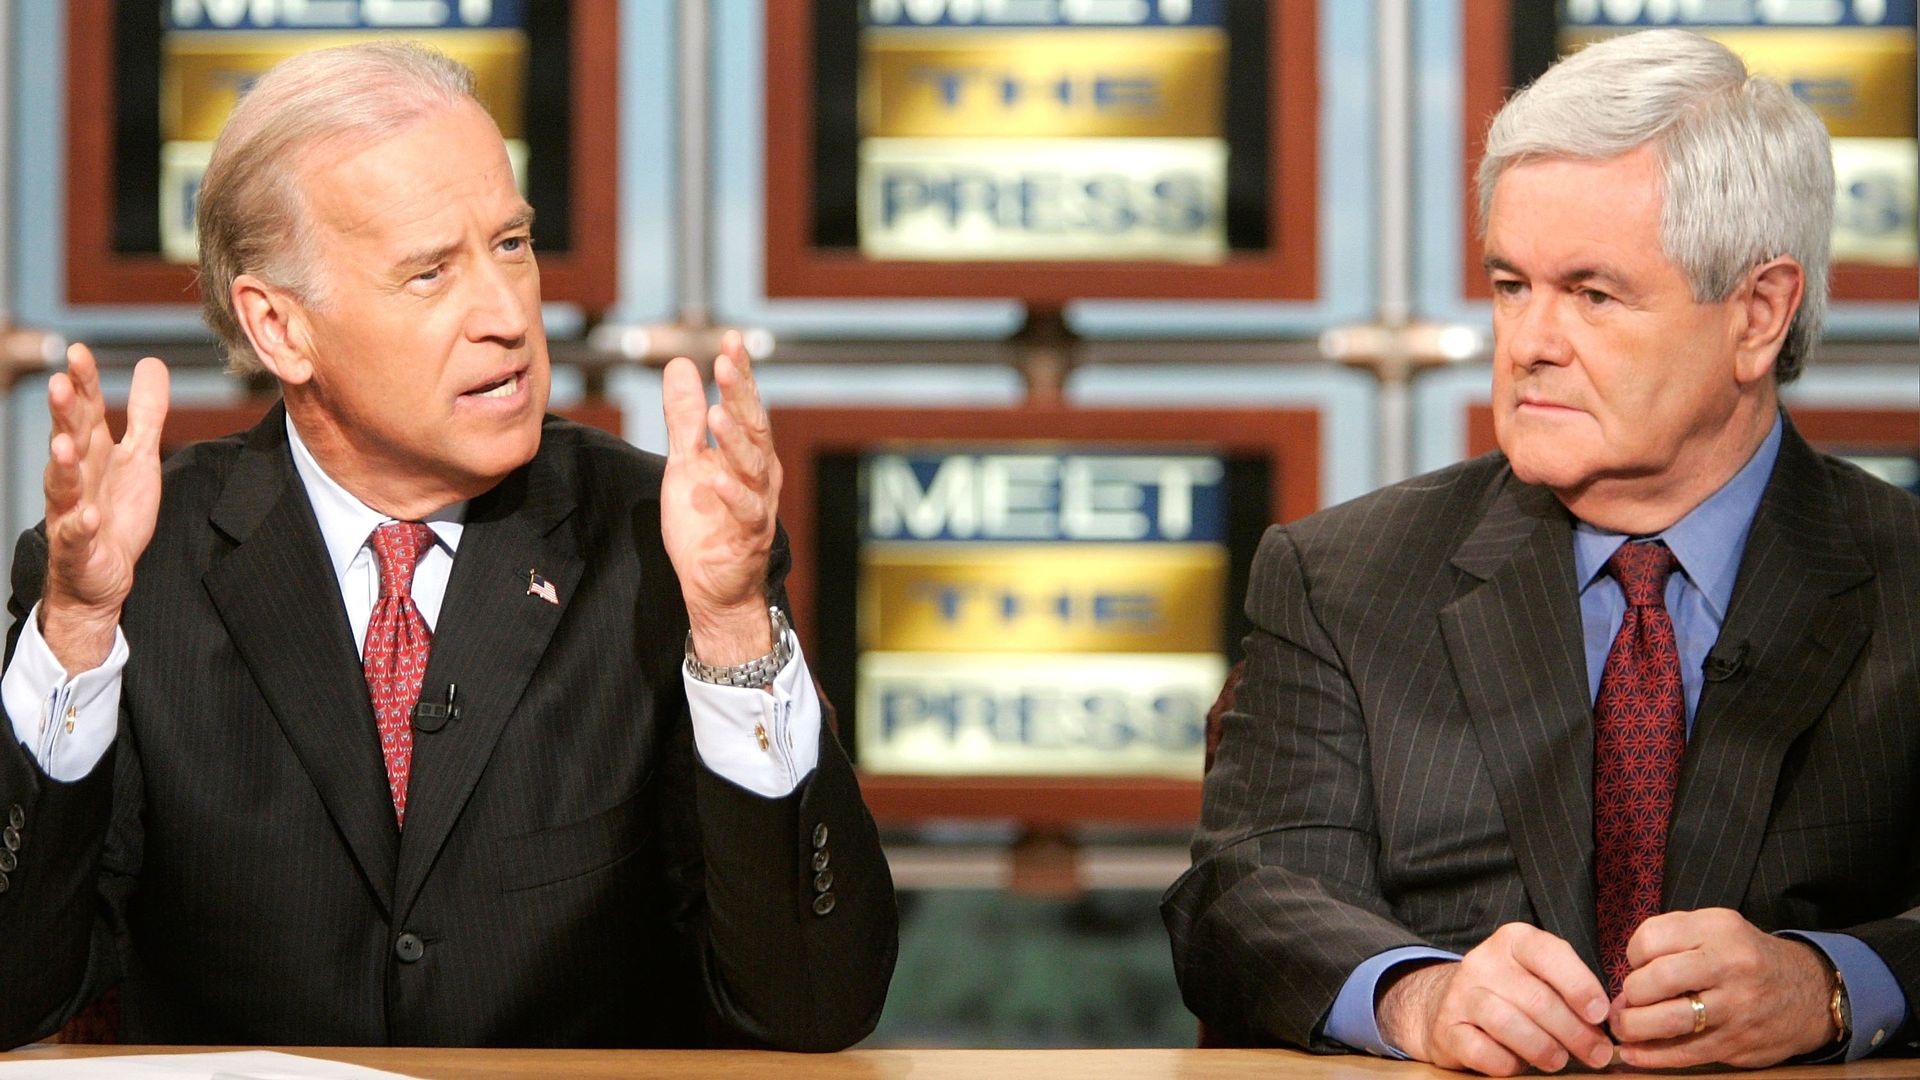 Then-Sen. Joe Biden and Newt Gingrich on "Meet the Press" in 2006.